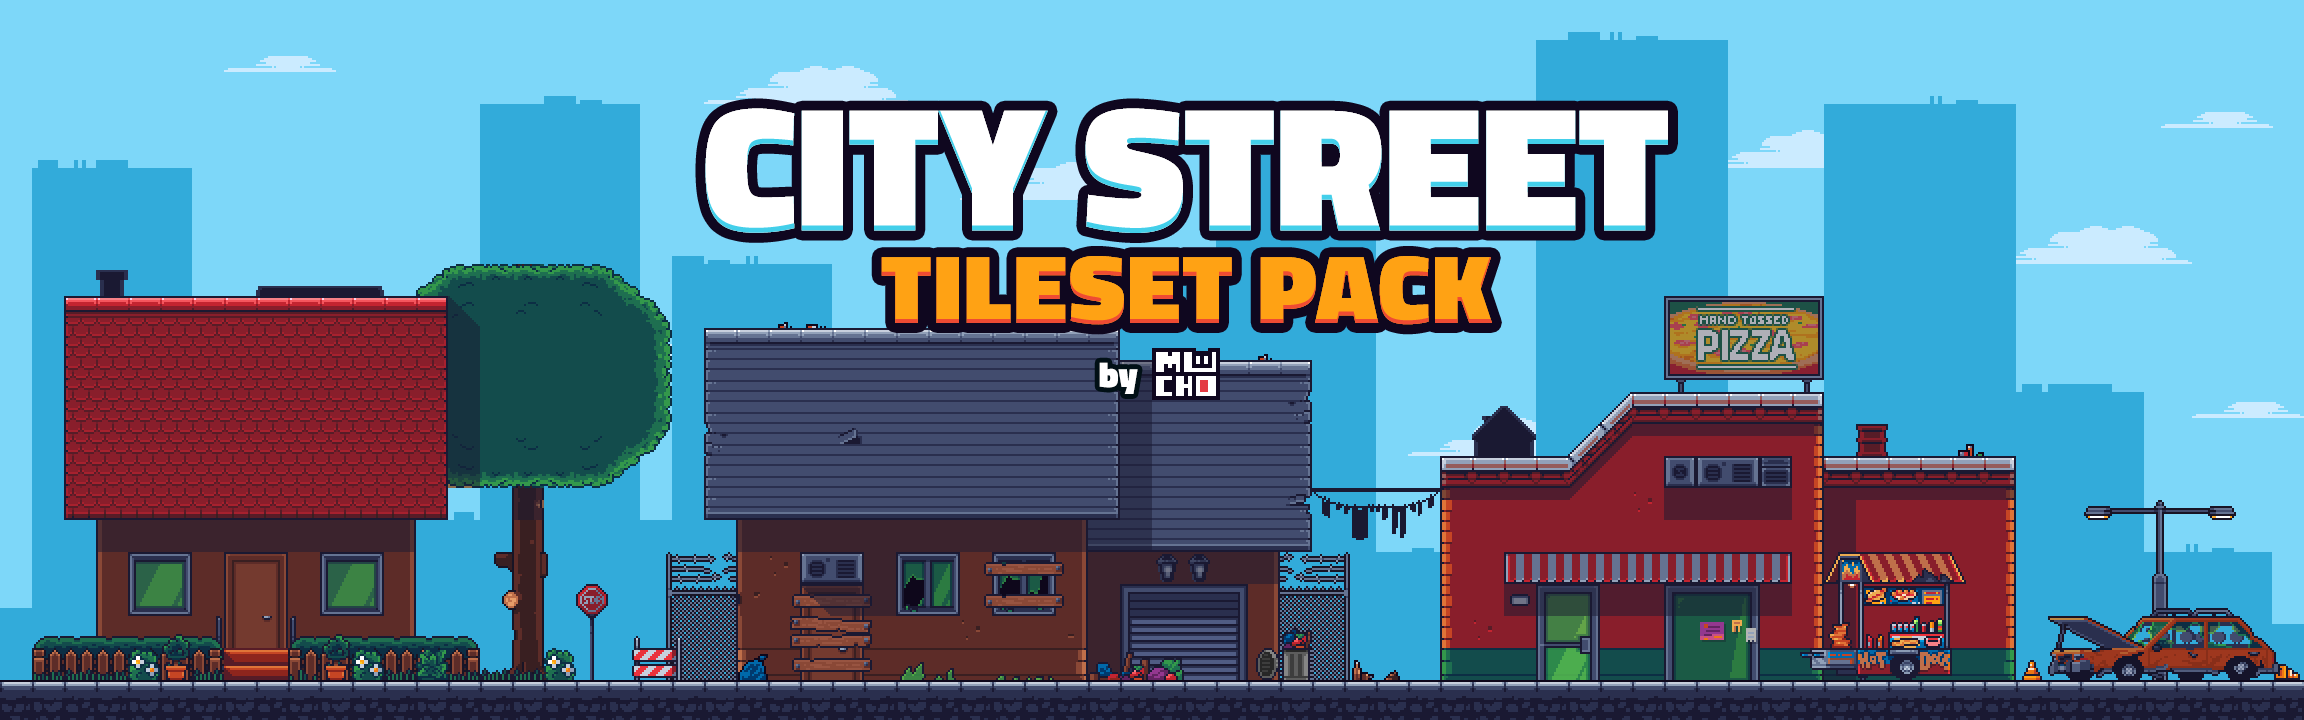 City Street Tileset Pack